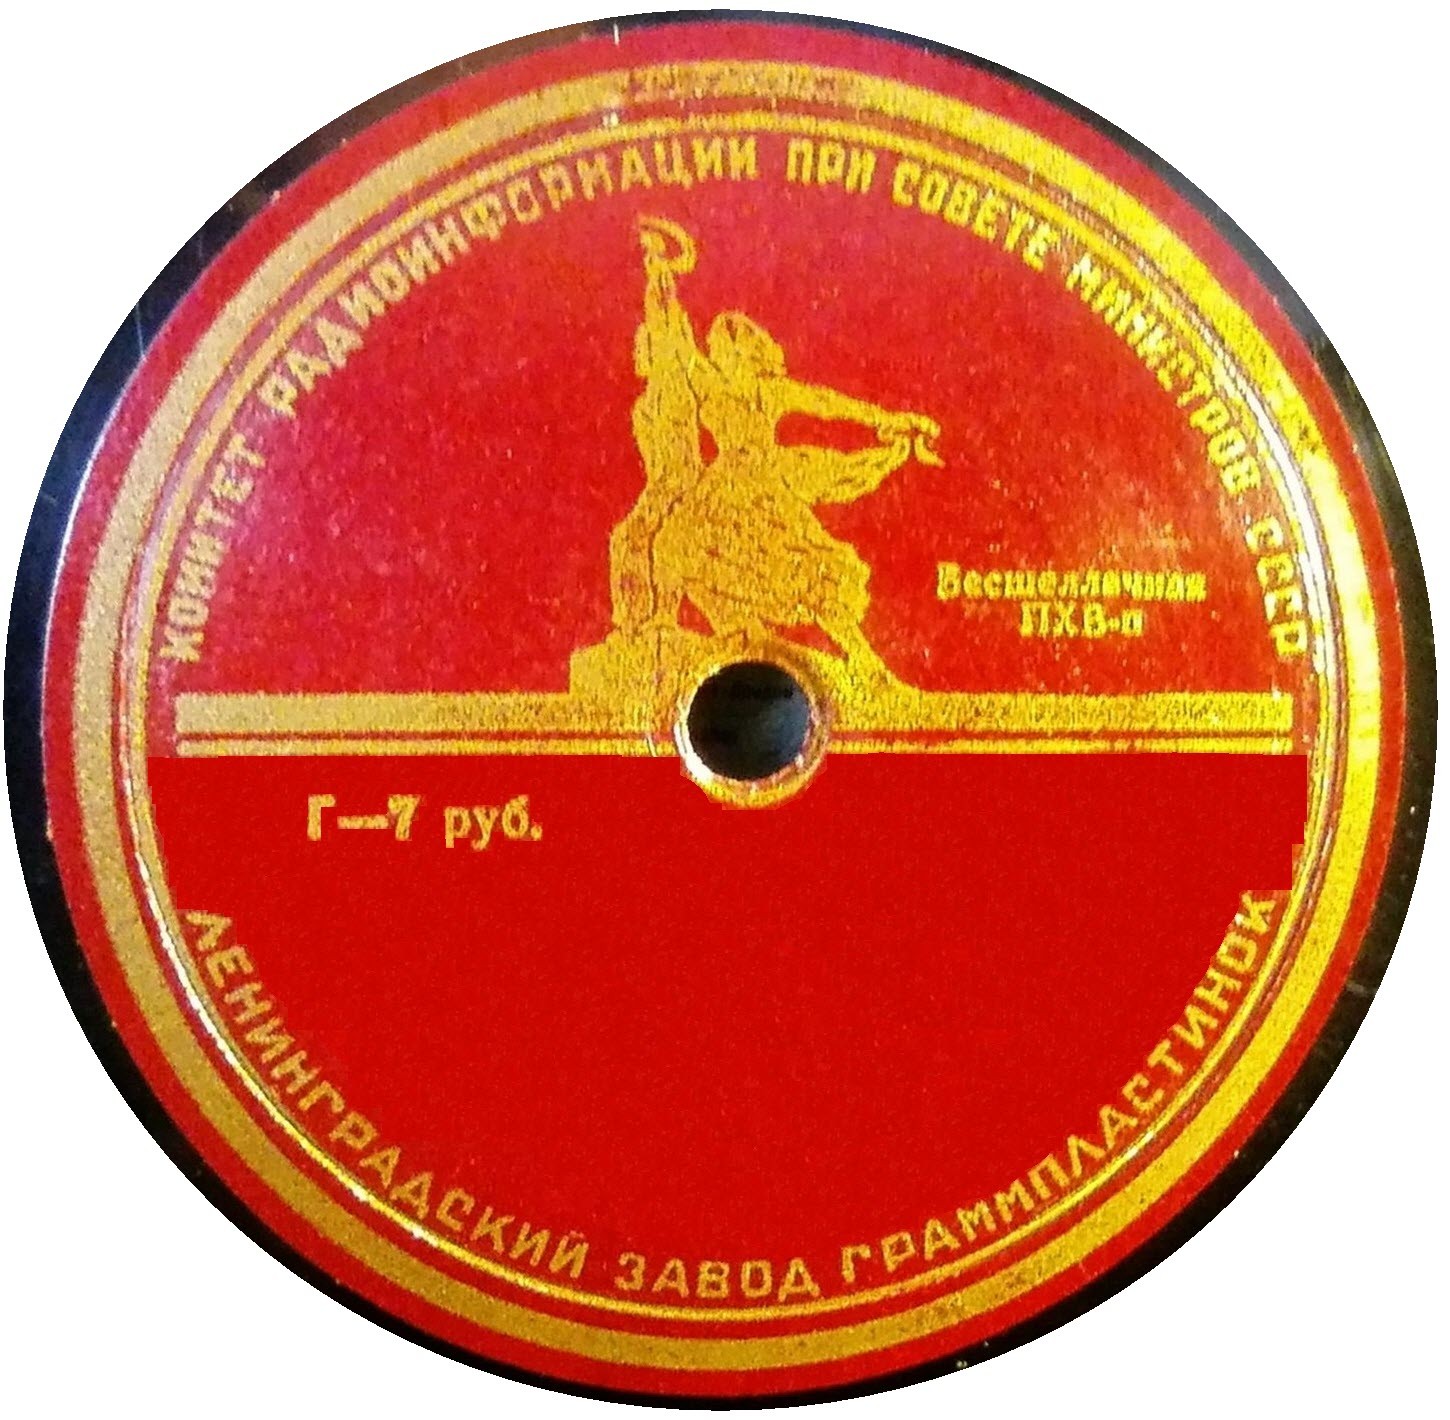 Бесшеллачная ПХВ-п (надпись по кругу, красная)